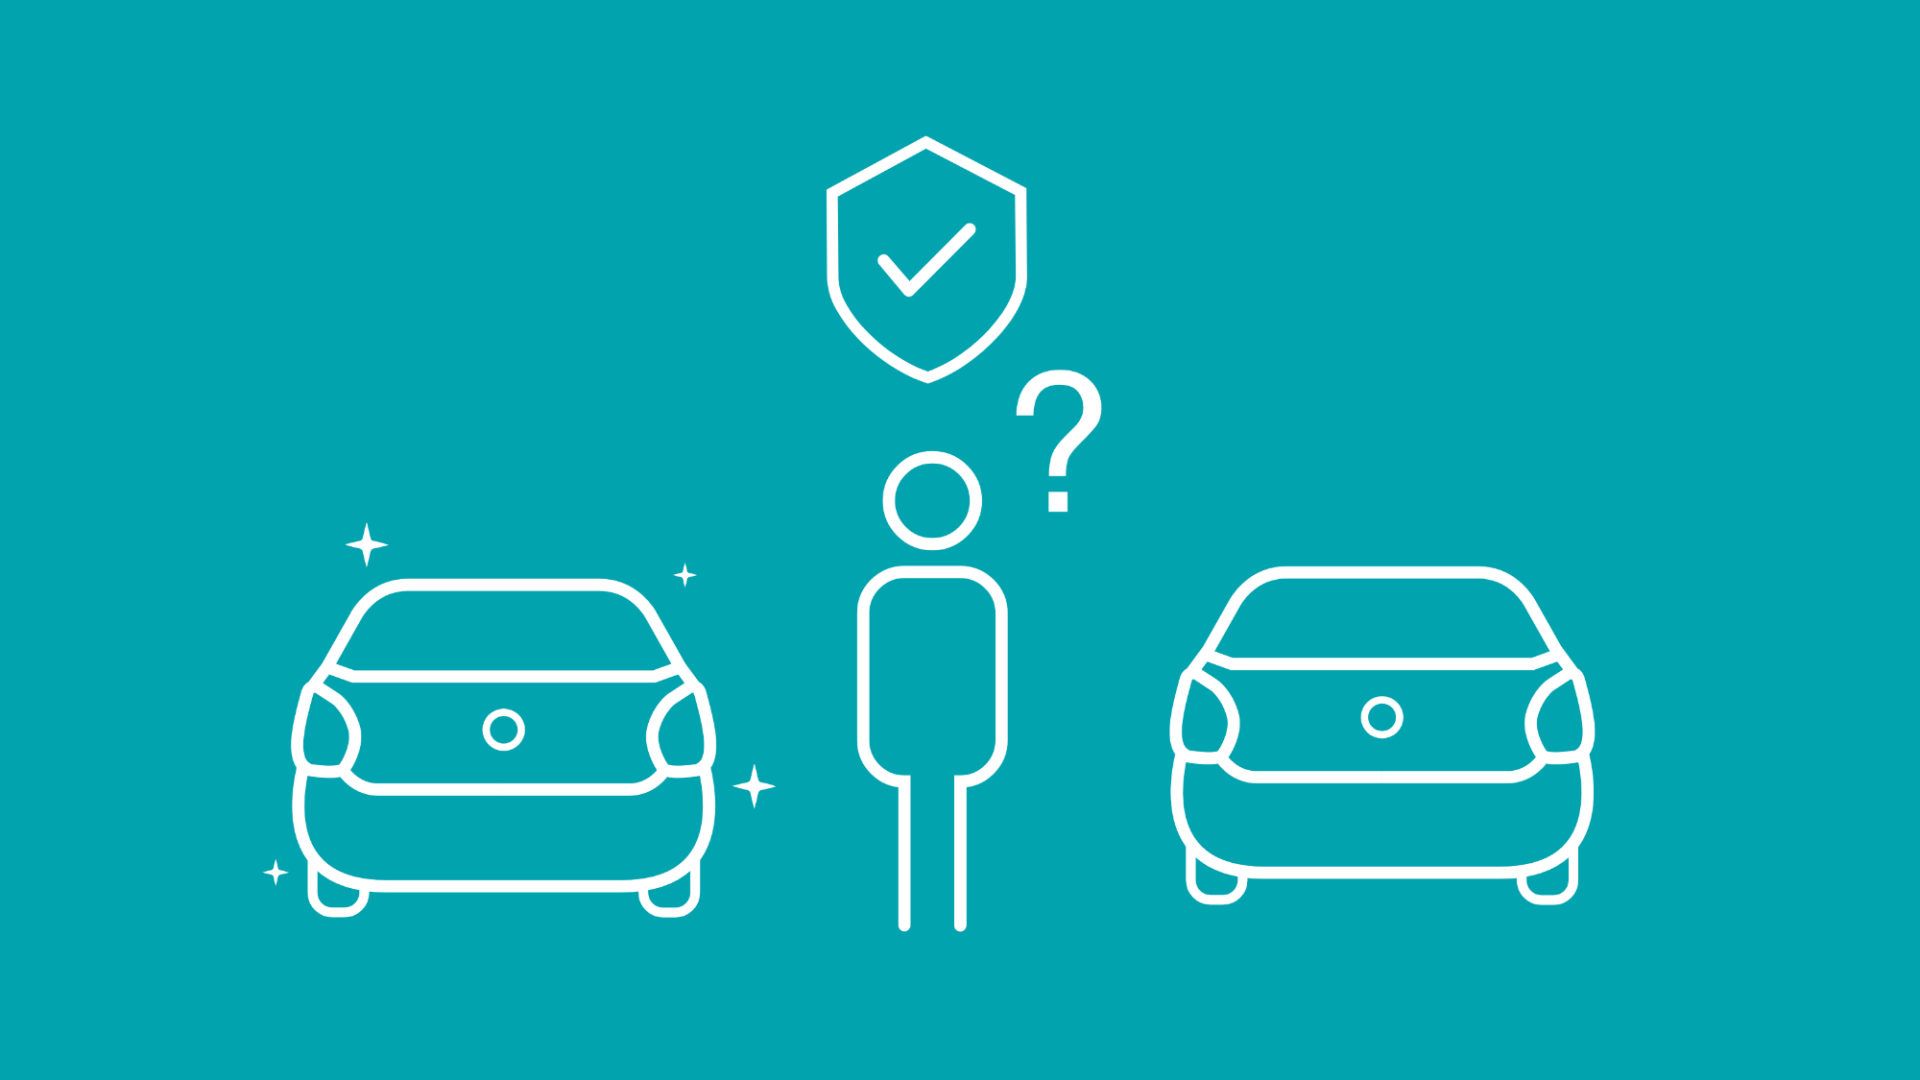 Eine Person fragt sich, ob ein Verbrenner oder ein E-Auto im Punkt Sicherheit besser abschneidet.